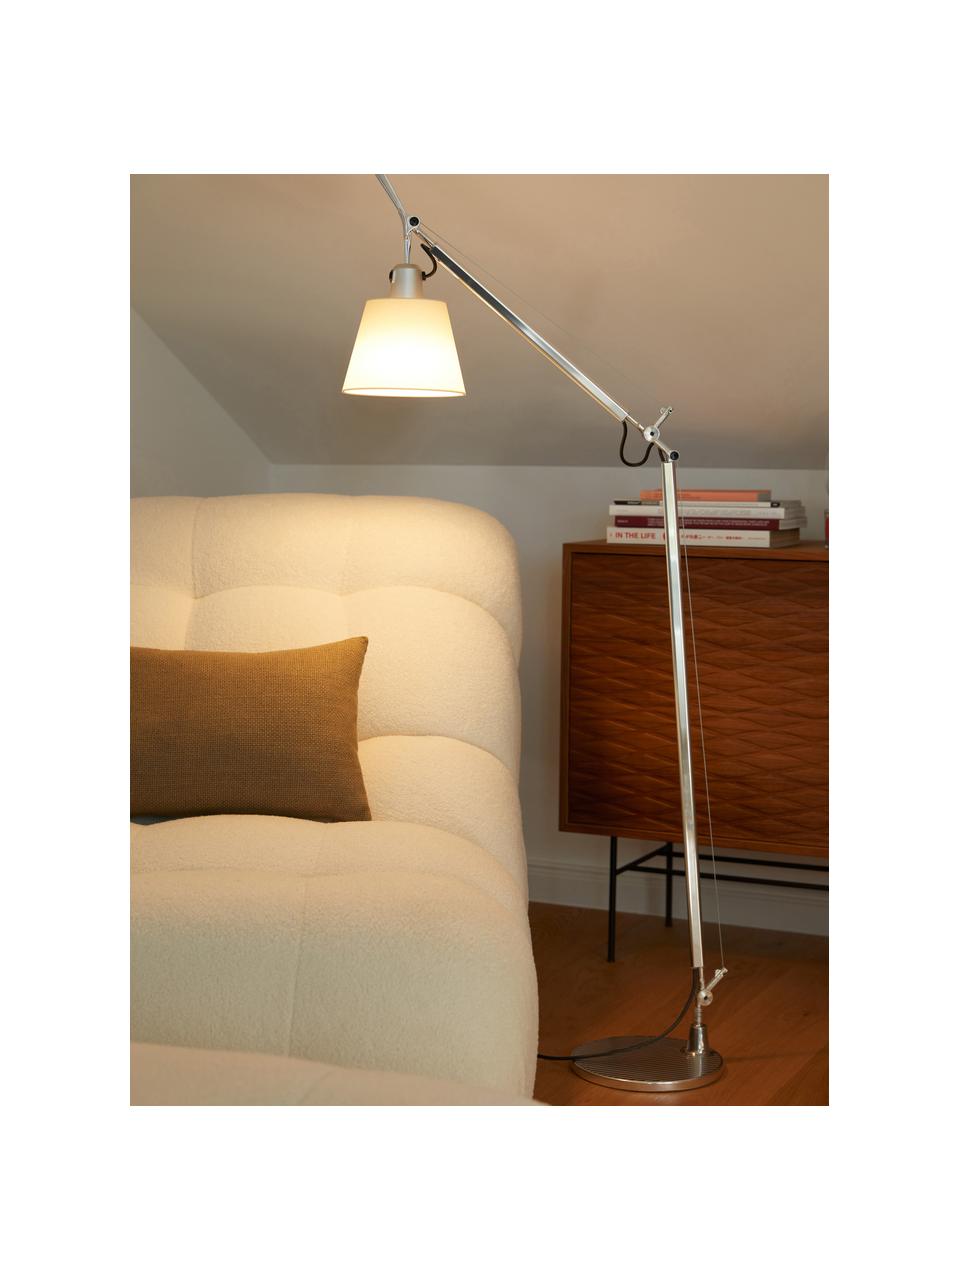 Stojací lampa Tolomeo  Basculante, Hliníková, krémová, Š 87 cm, V 108 cm